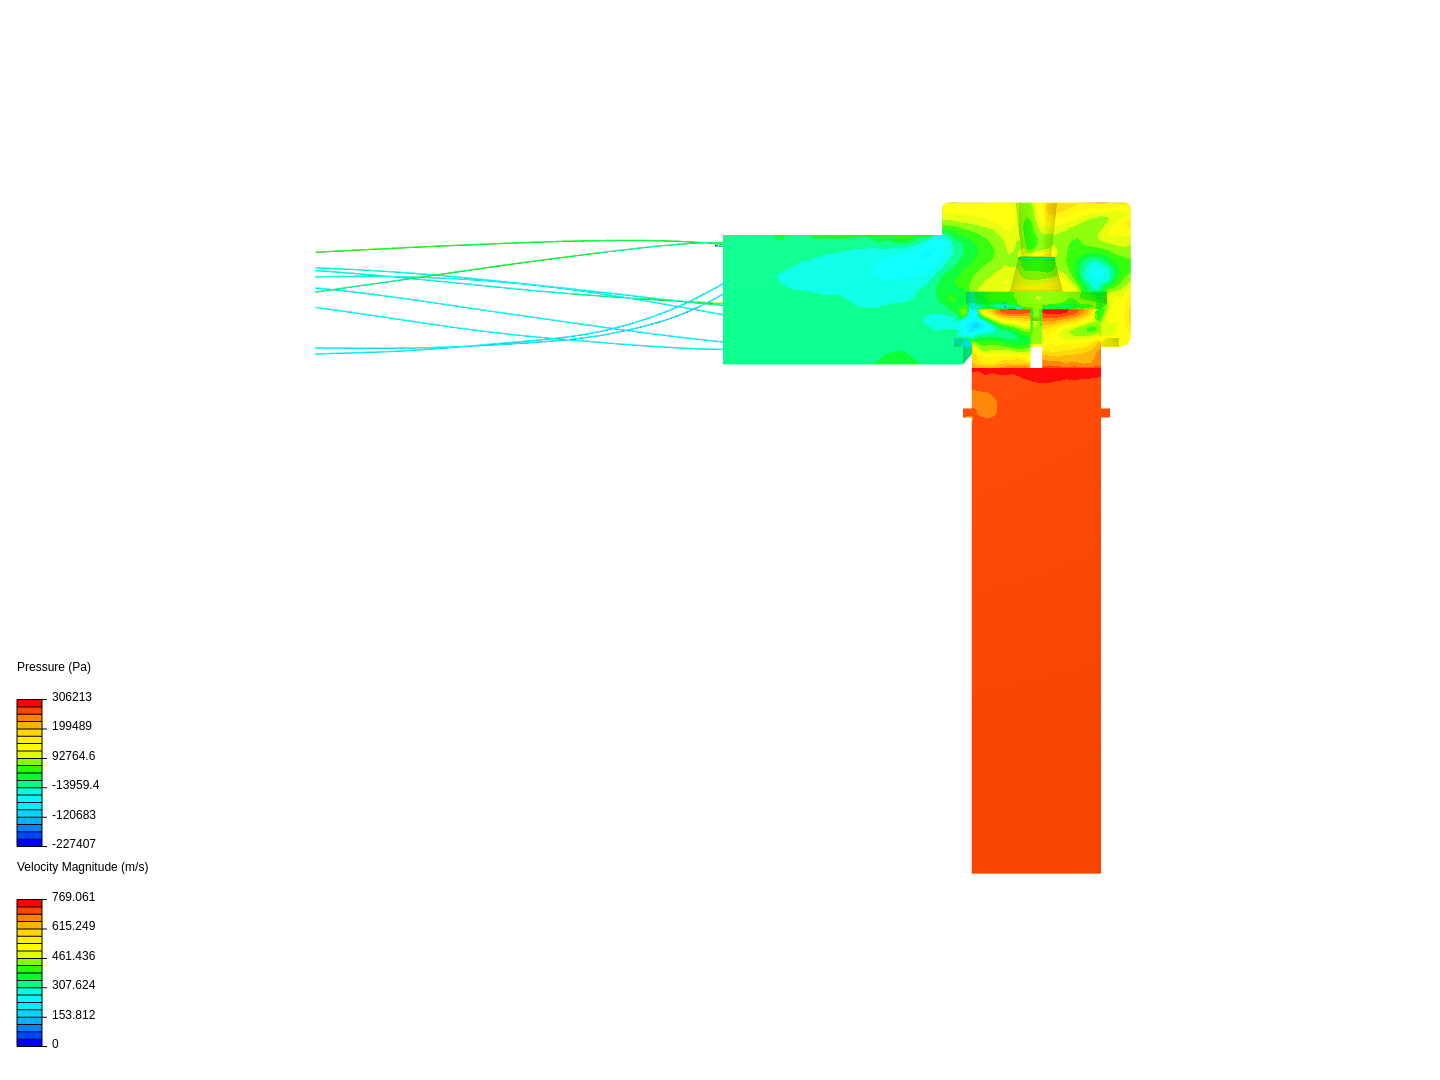 Gas through a valve image